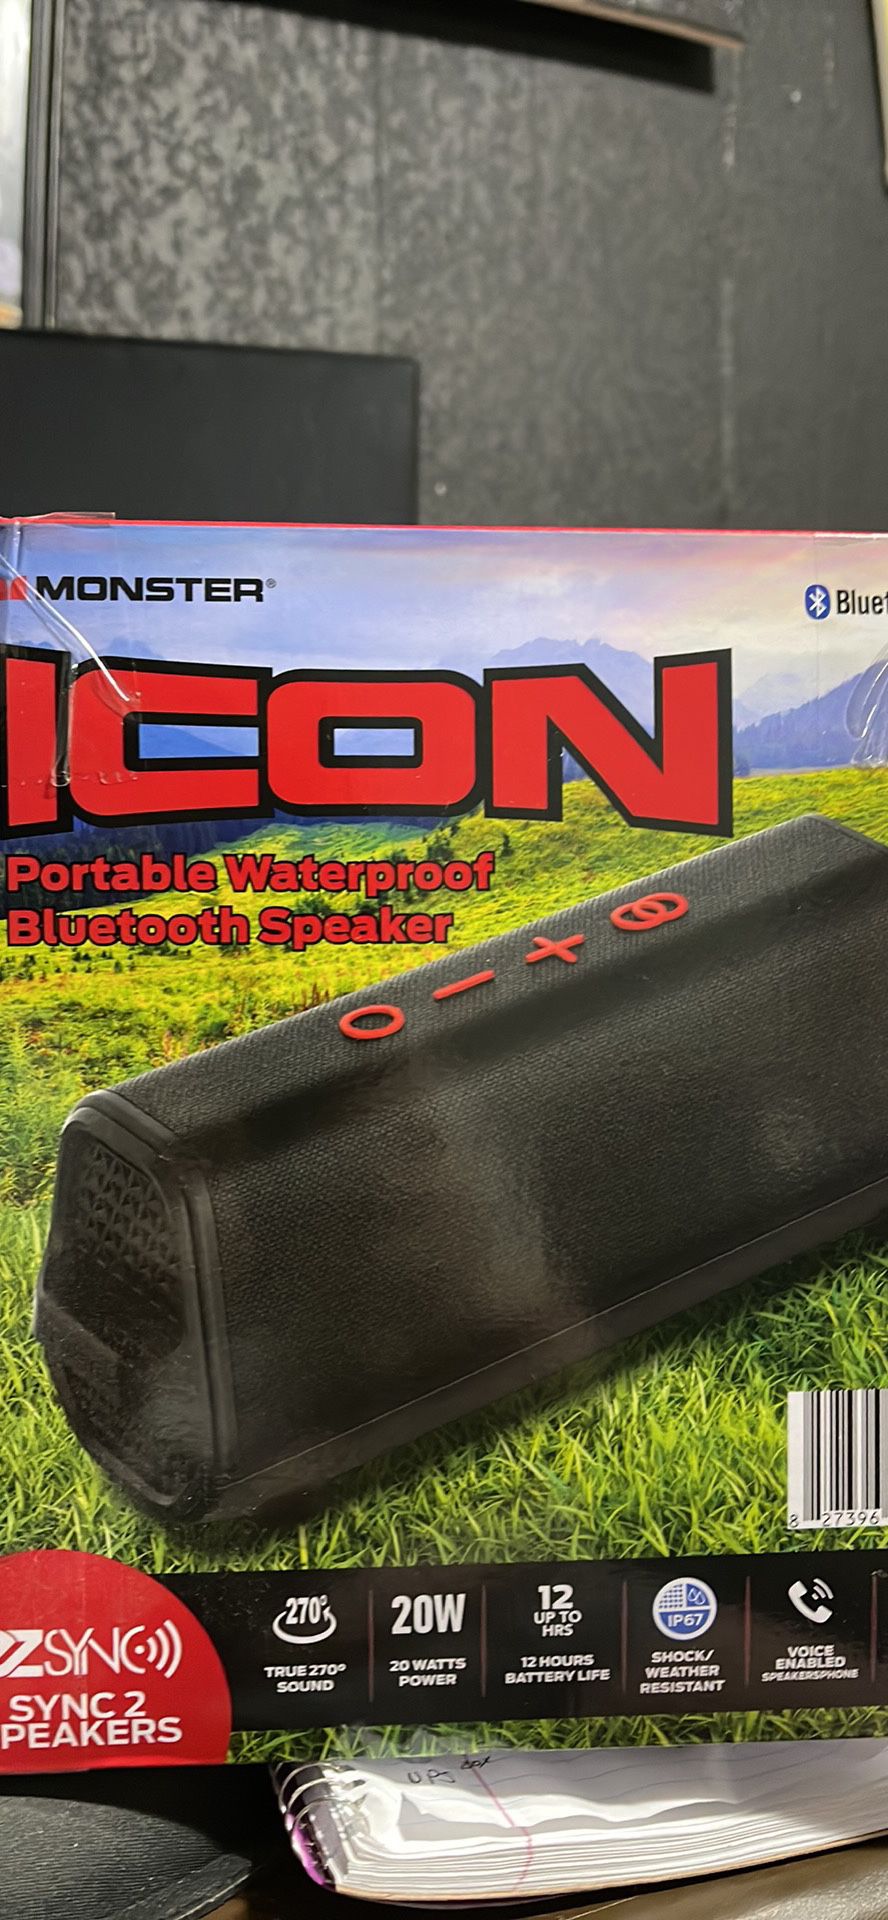 Monster Icon Bluetooth Waterproof Speaker 